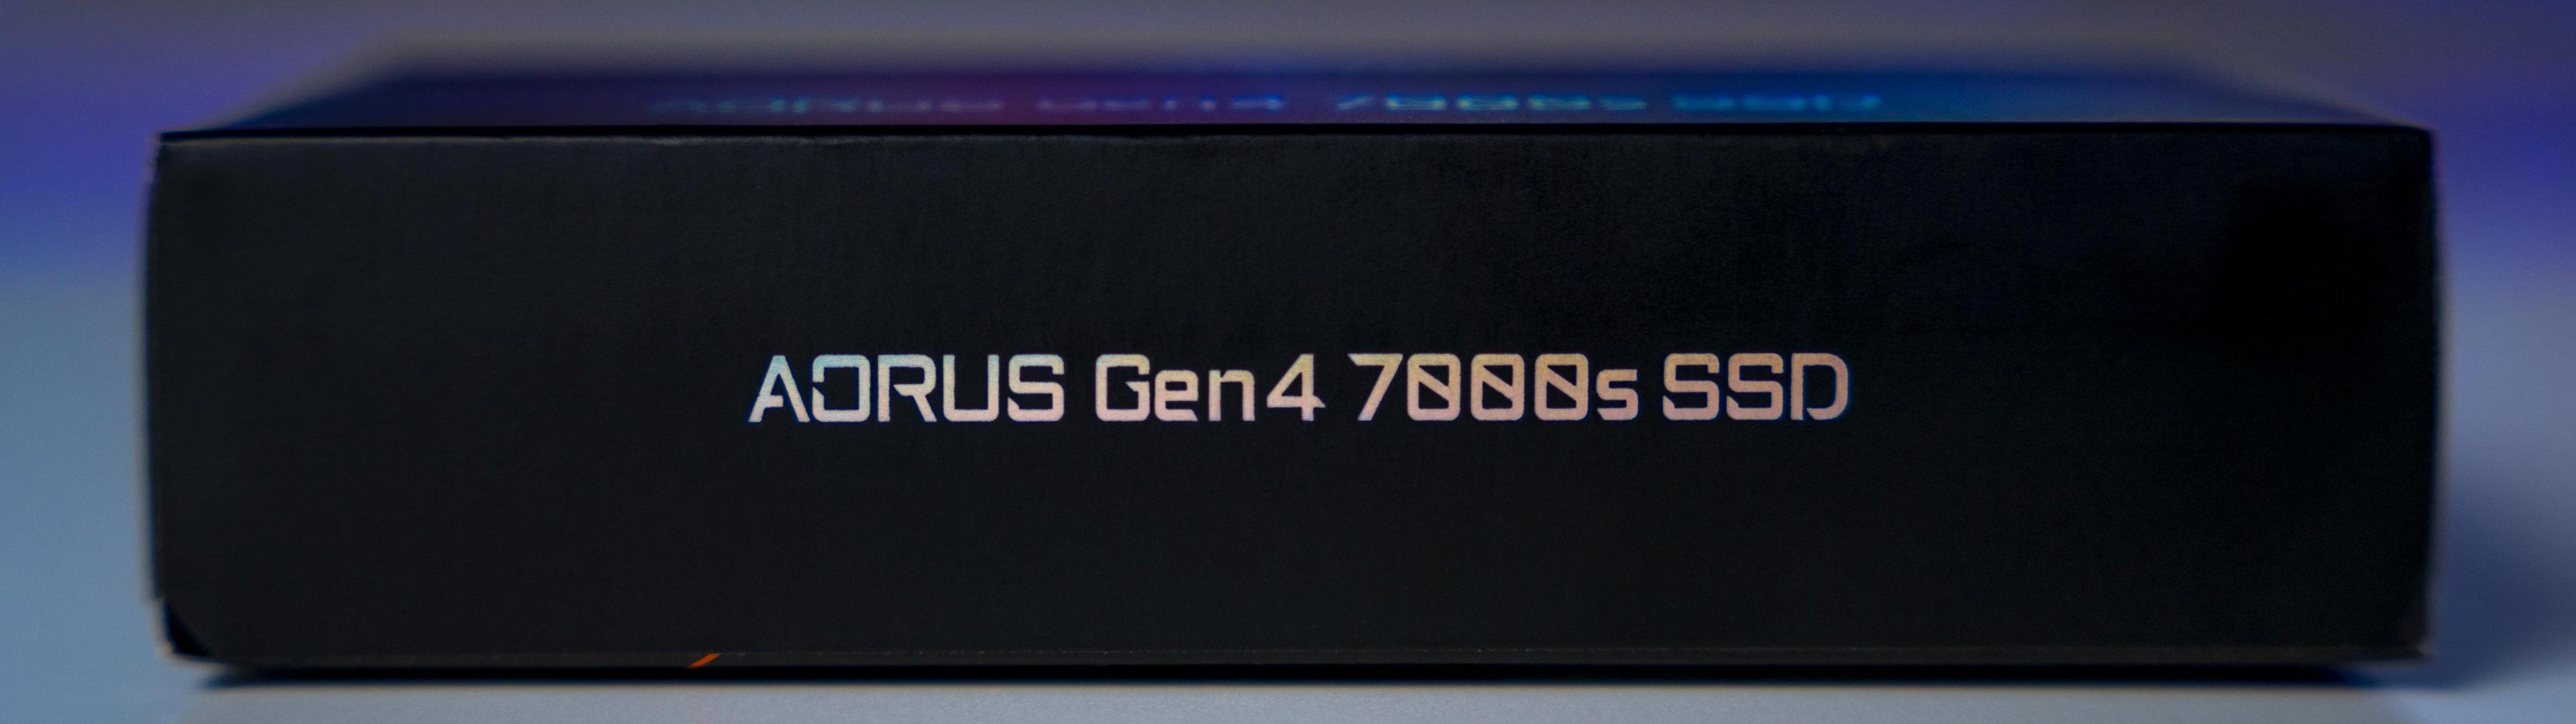 Aorus-Gen4-7000s-SSD-Box-(10)